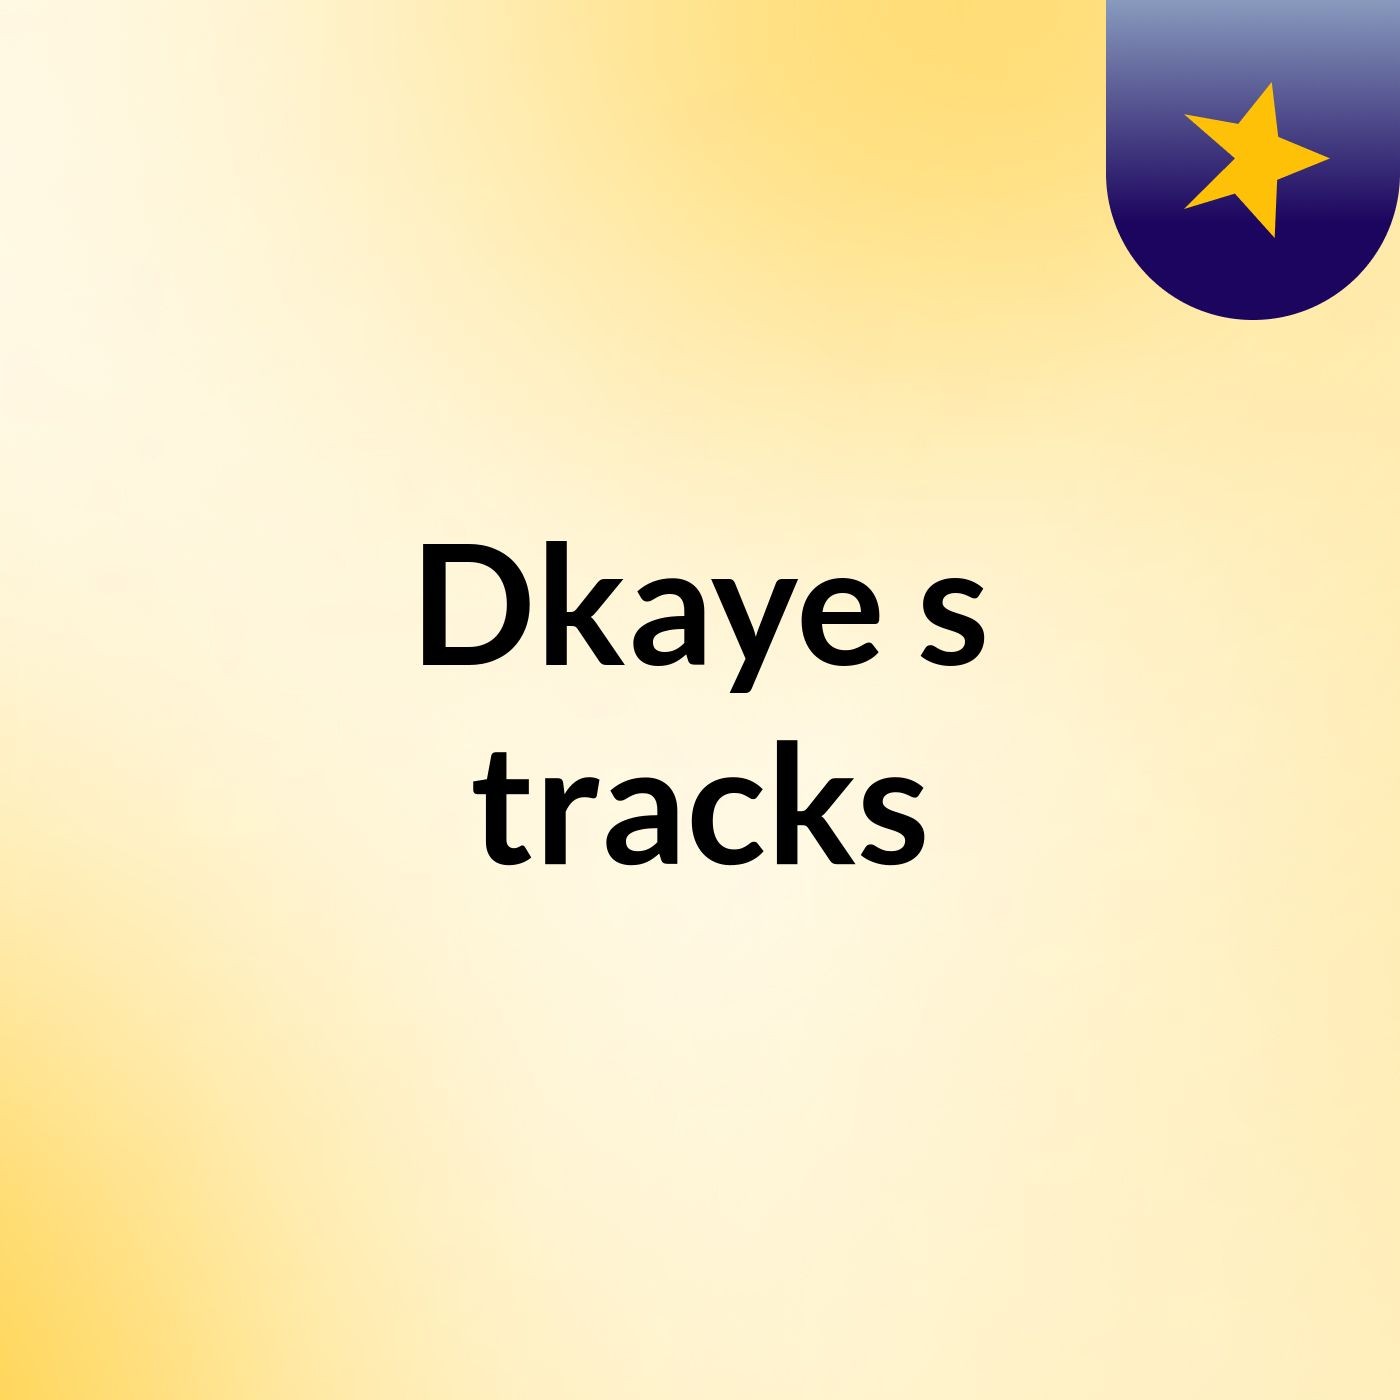 Dkaye's tracks